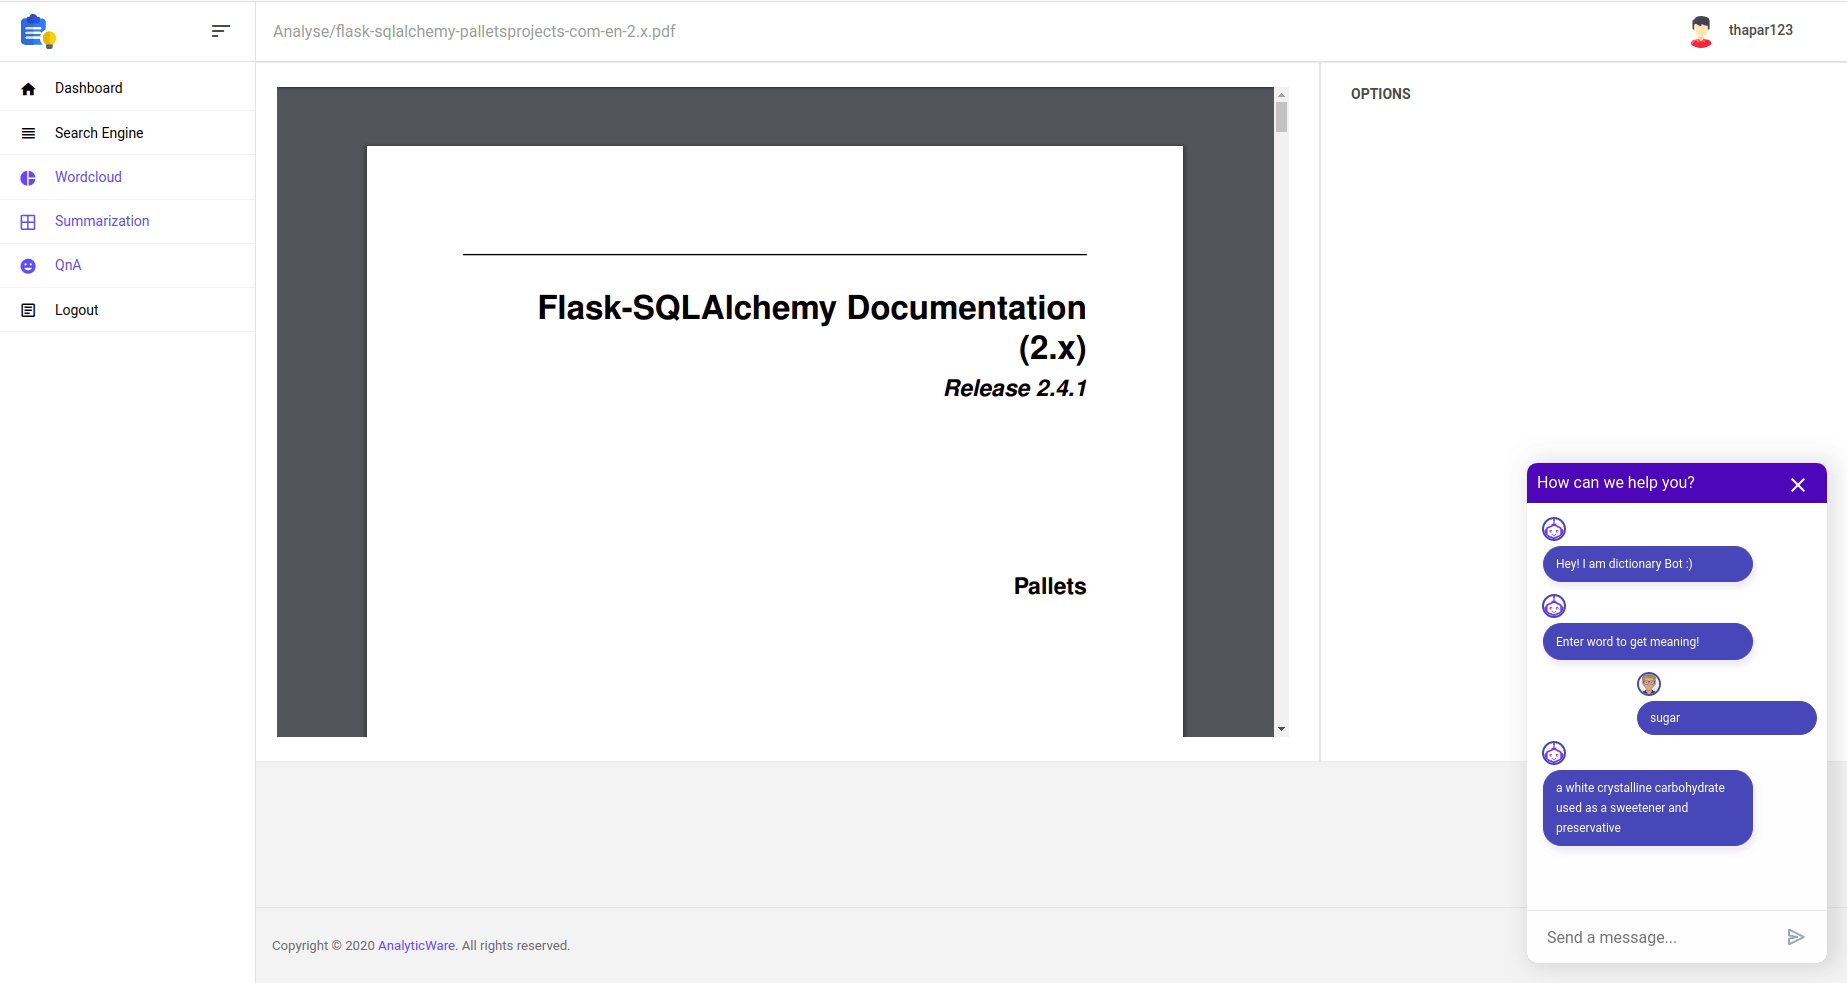 PDF Analysis Portal